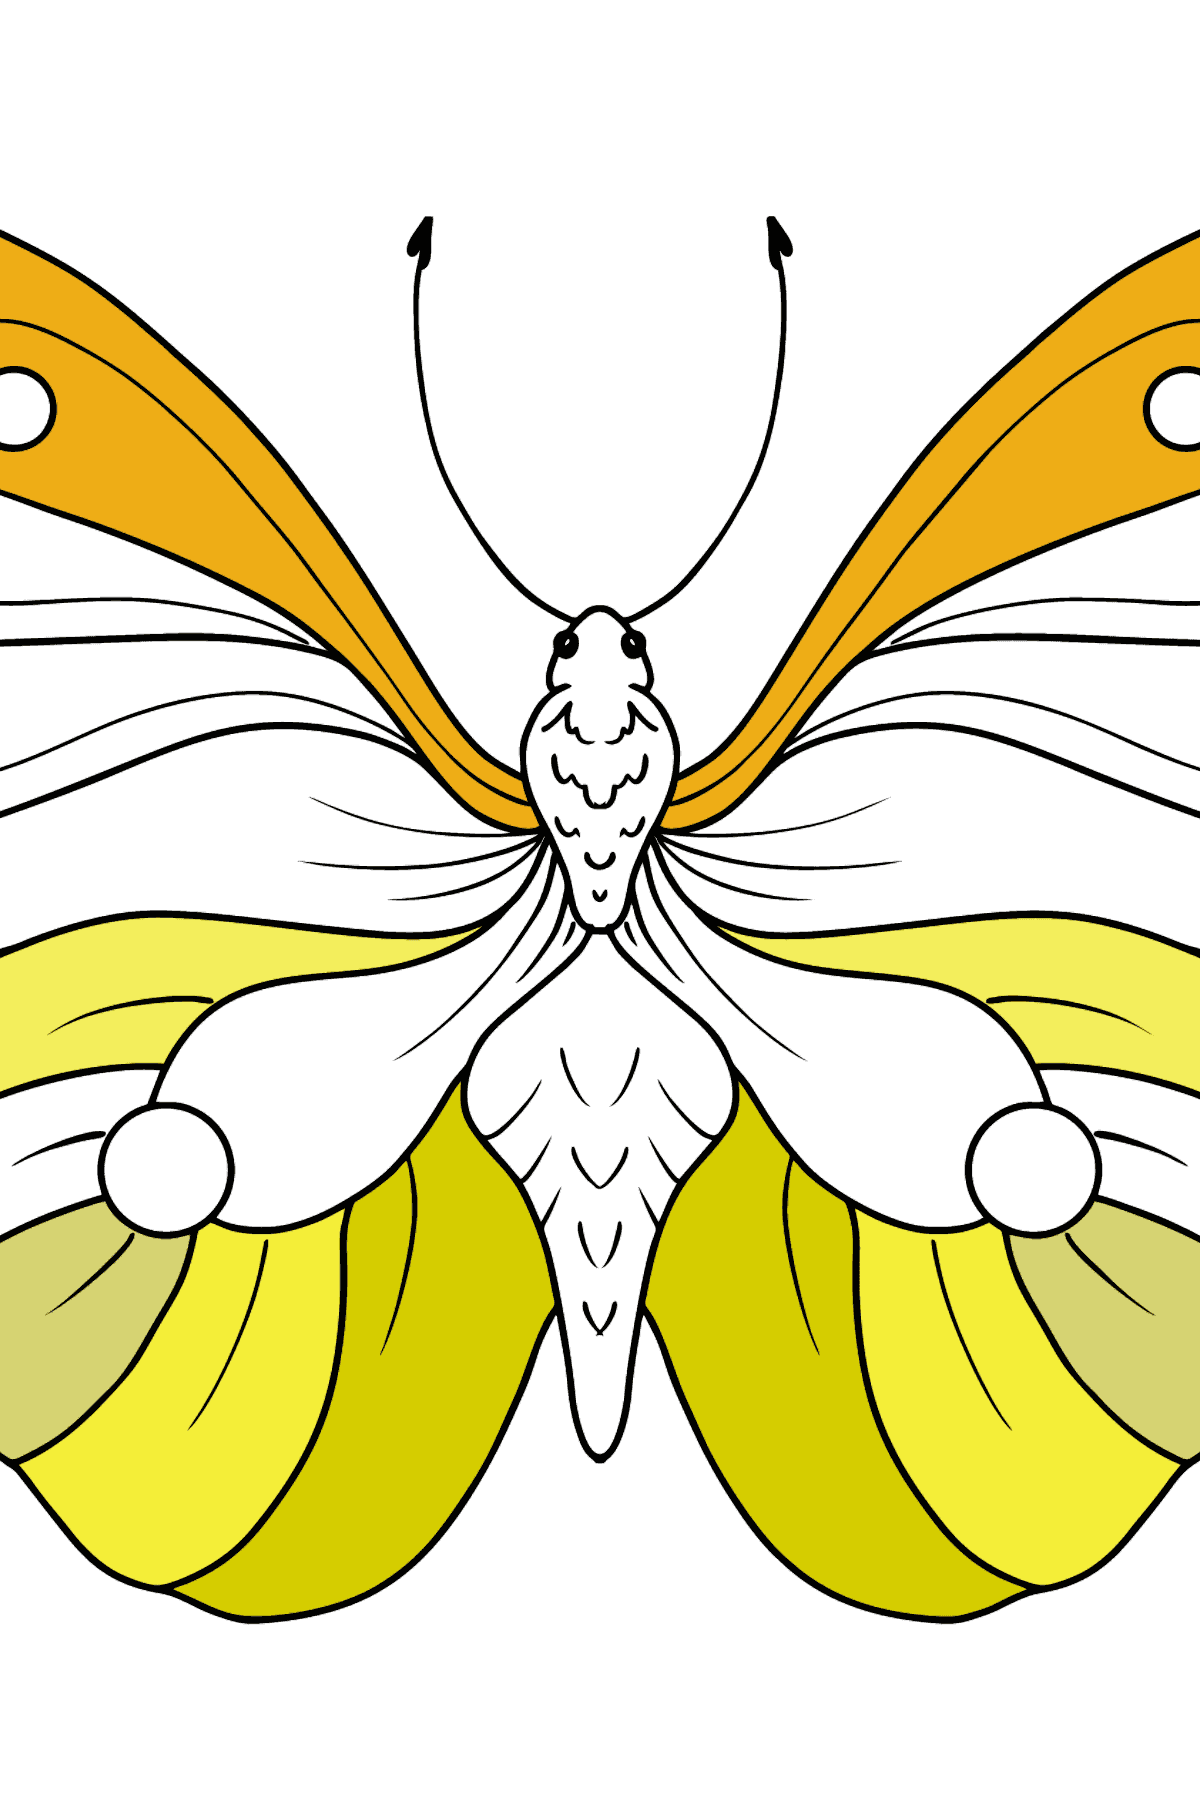 Kleurplaat citroengras vlinder - kleurplaten voor kinderen